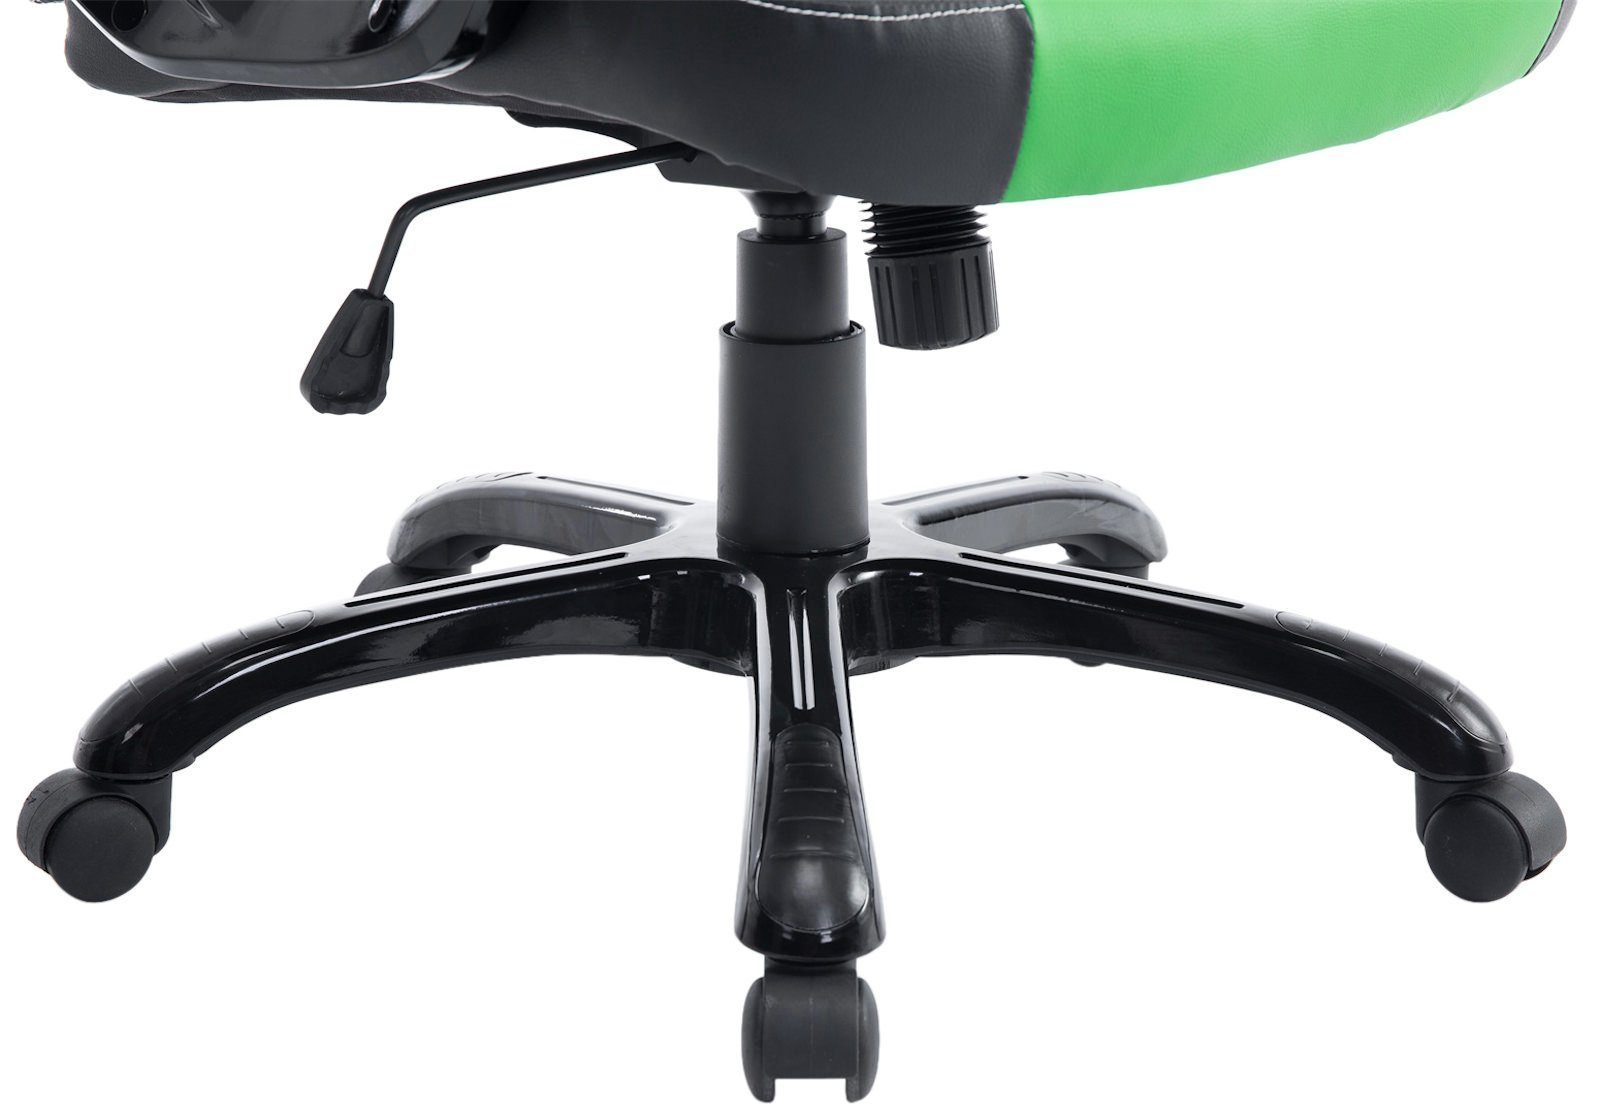 Gaming Chair Höhenverstellung schwarz/grün Pedro, CLP drehbar mit